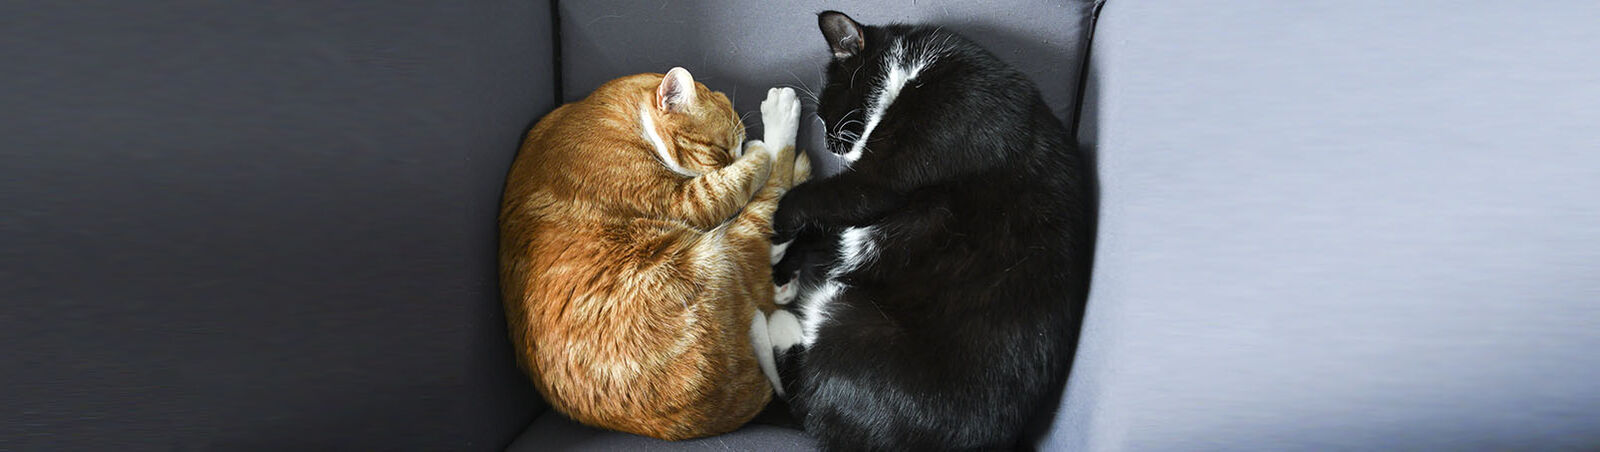 Zwei Katzen kuscheln sich aneinander.